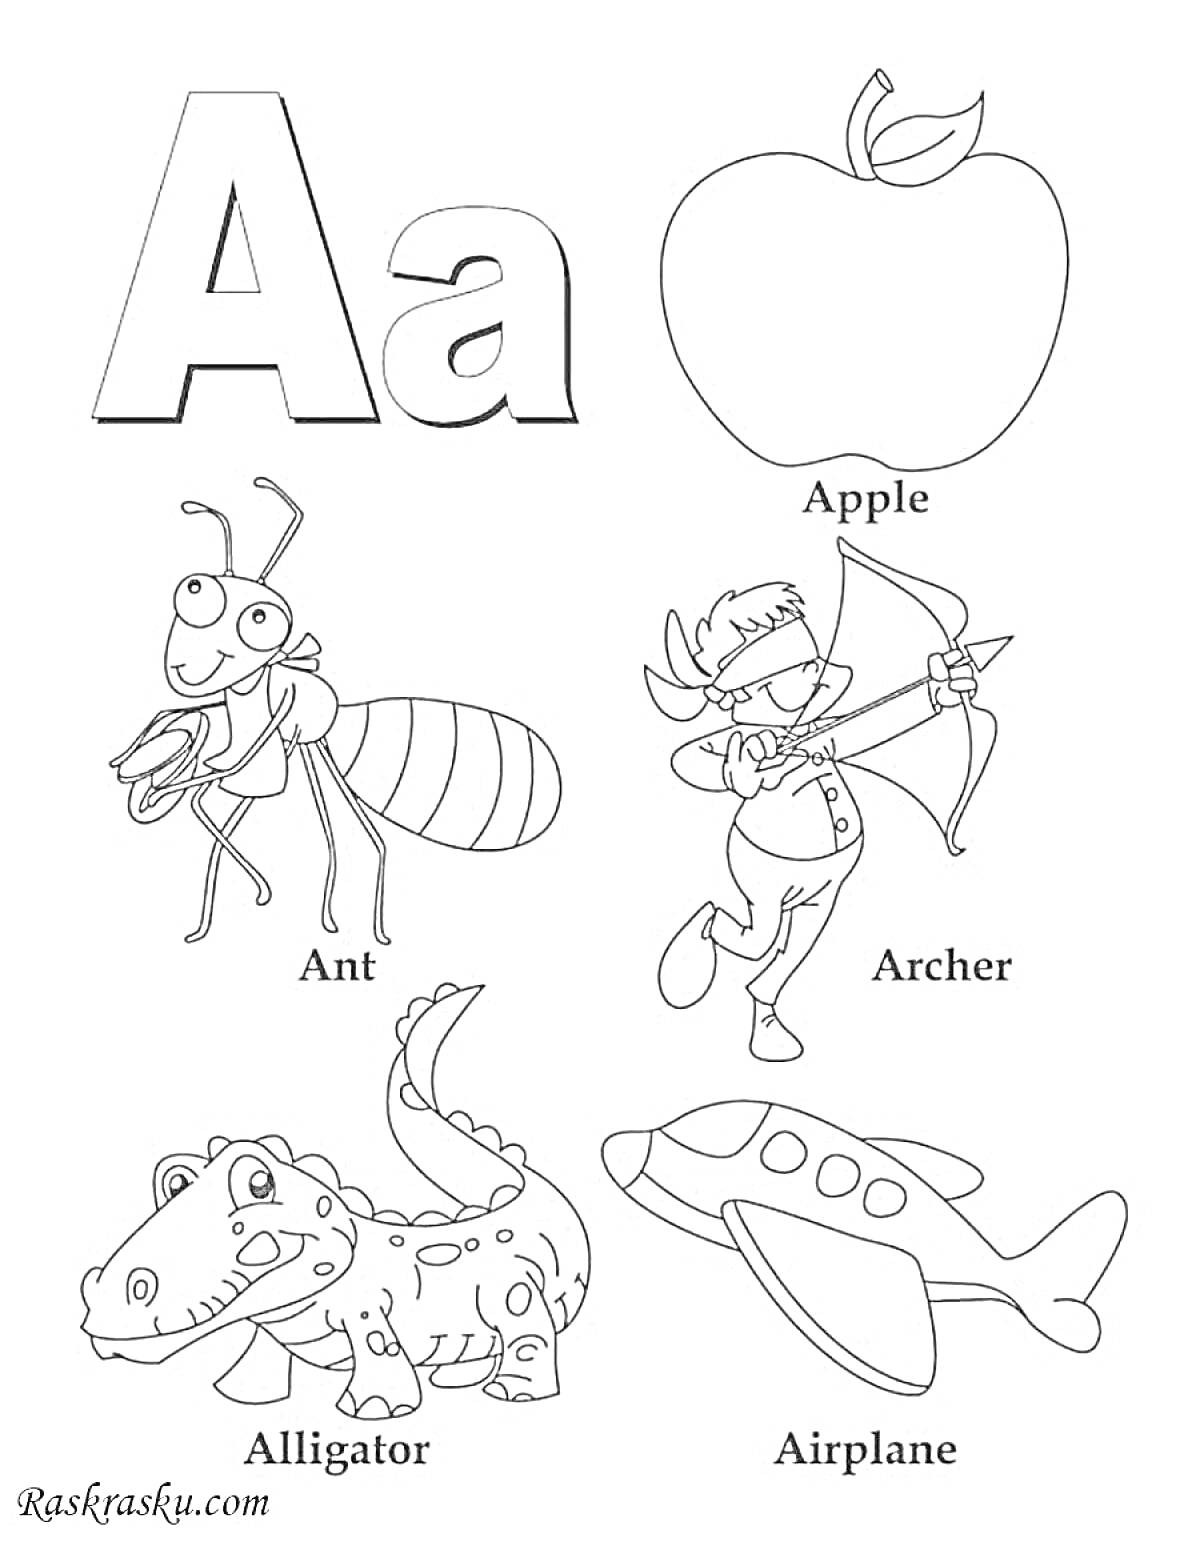 Раскраска Алфавит - буква A с муравьем, яблоком, лучником, аллигатором и самолетом